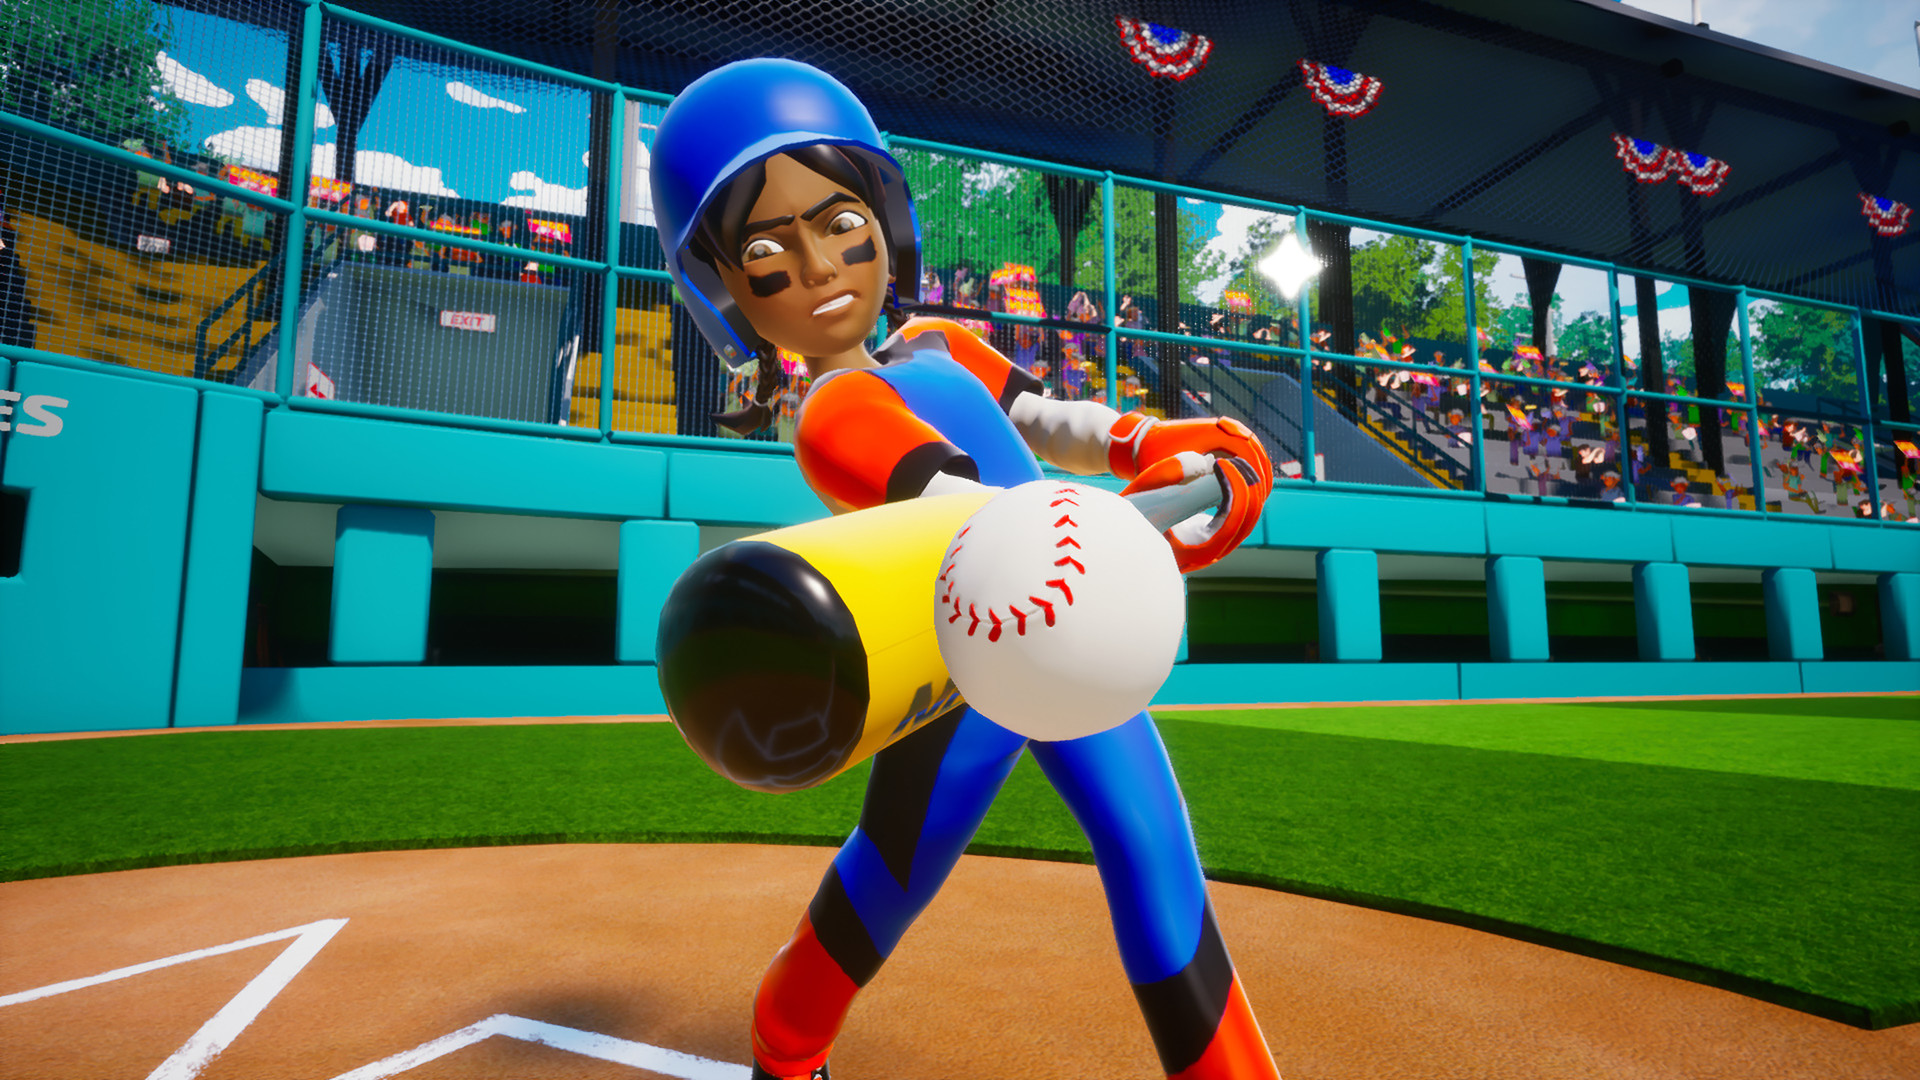 Little League World Series Baseball 2022 Steam CD Key 0.59 $